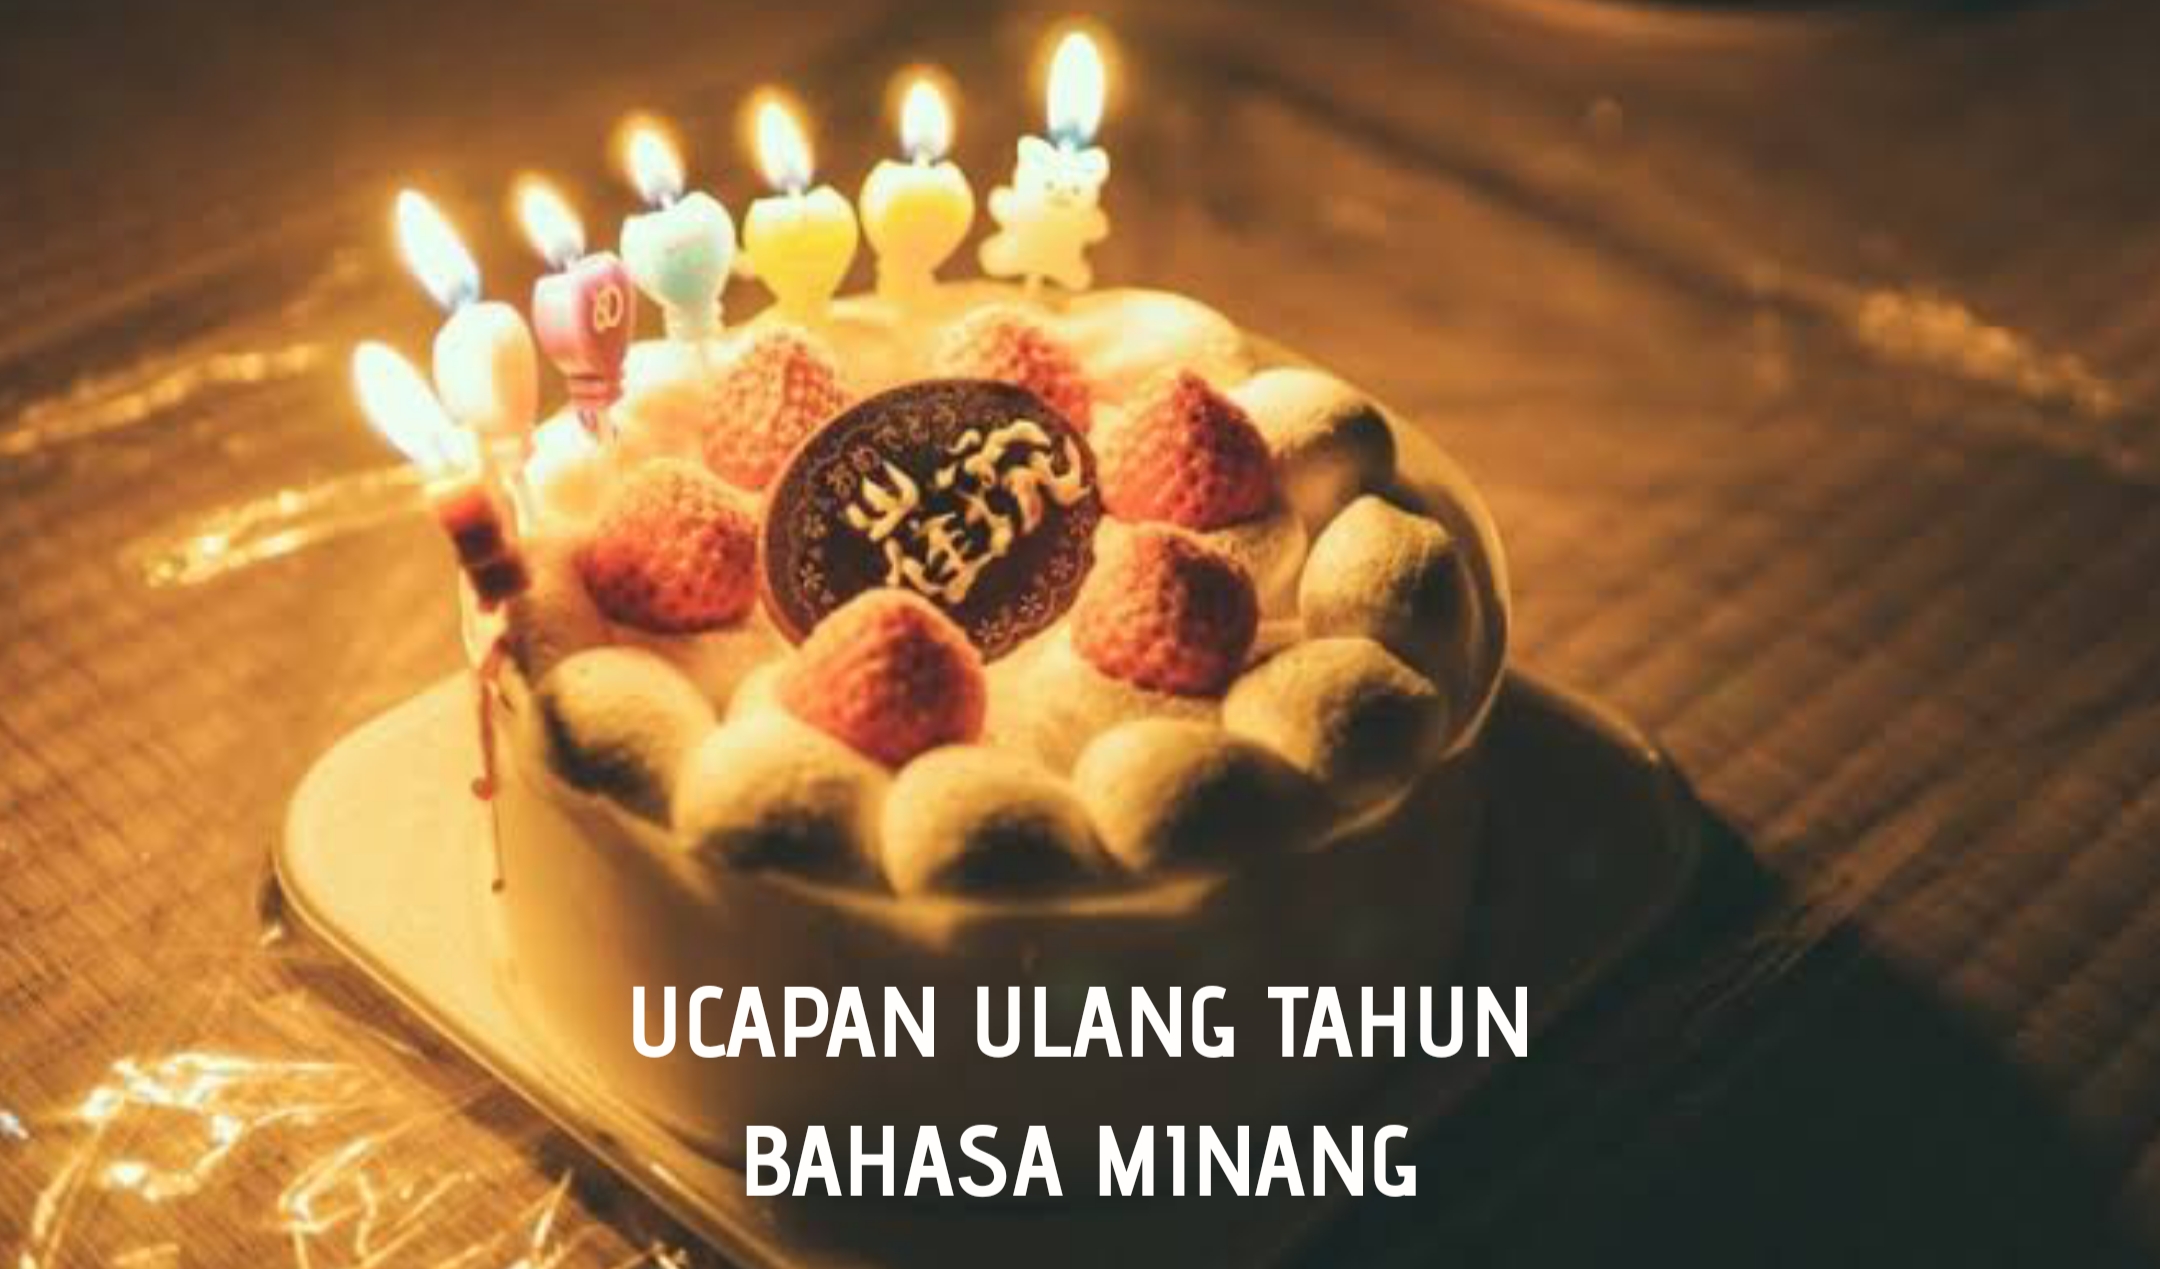 Ucapan ulang tahun bahasa Minang